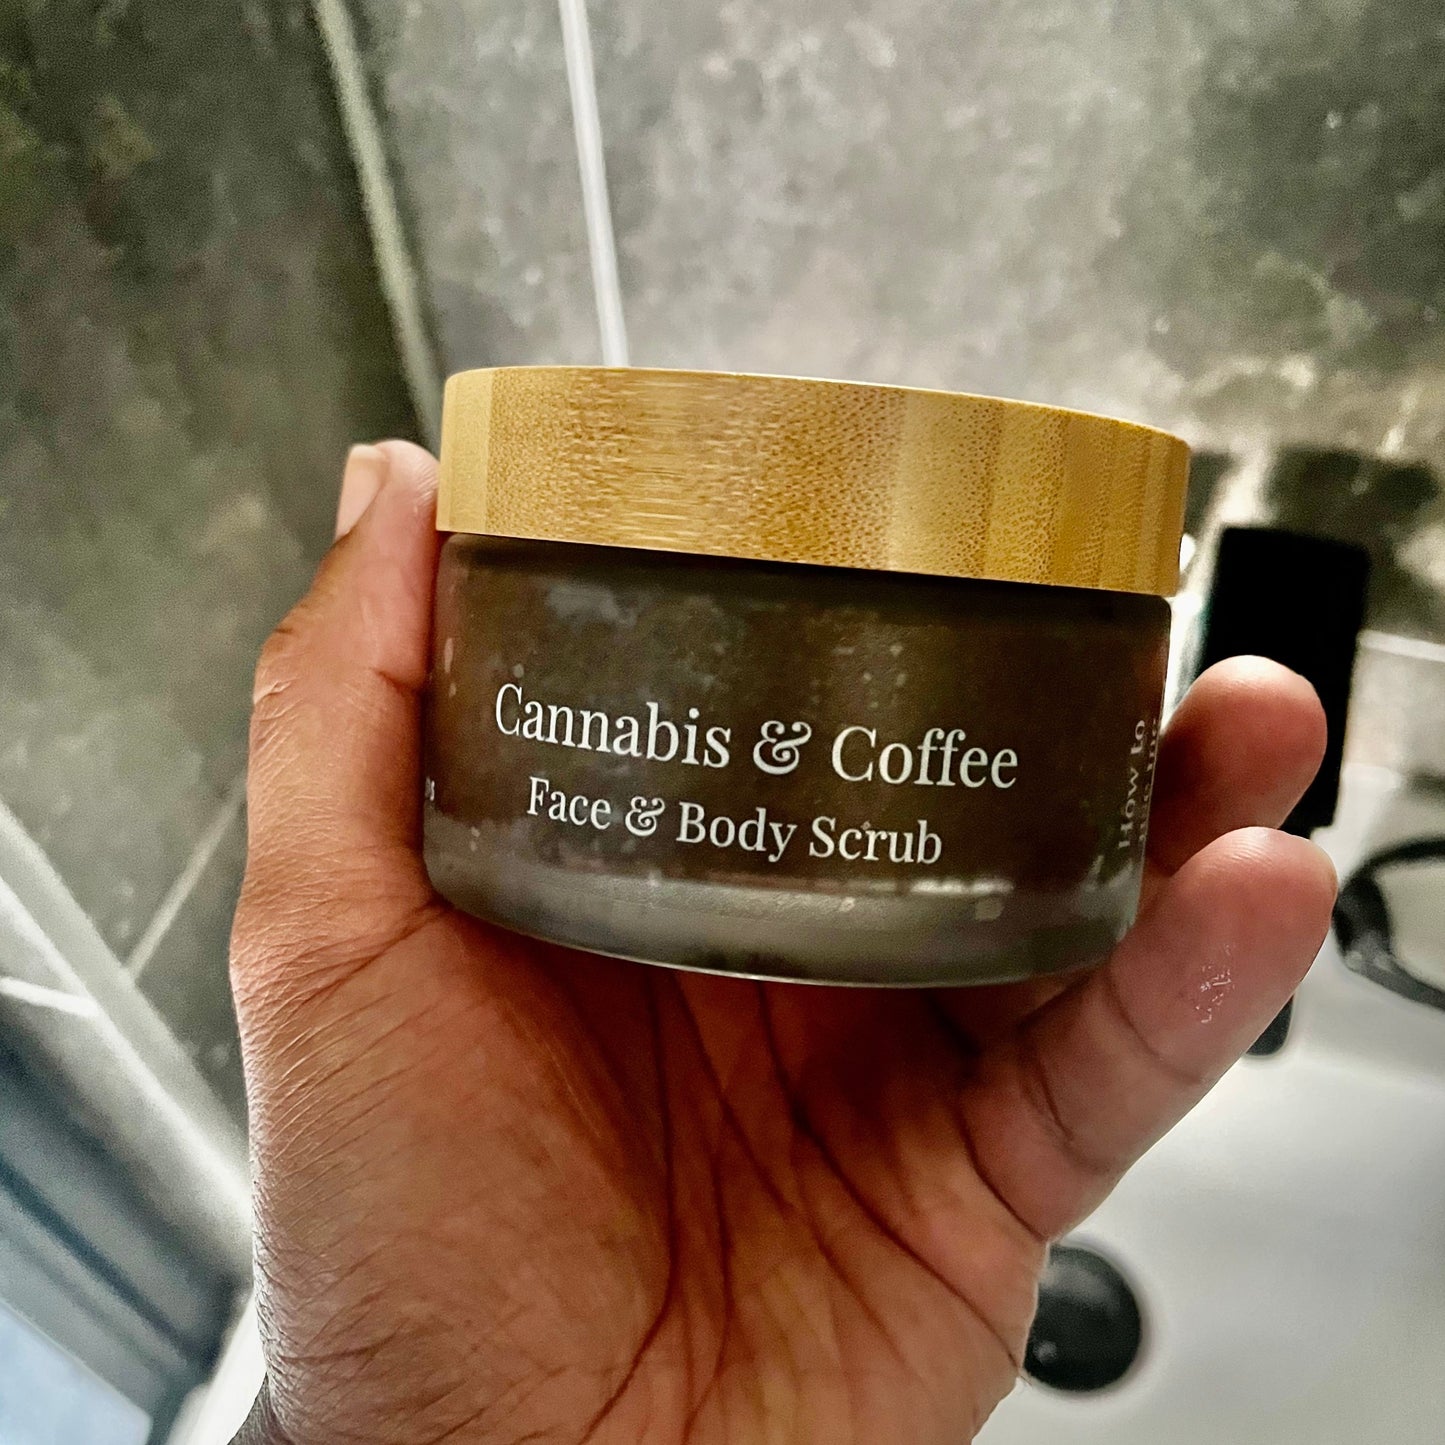 Cannabis & Coffee Face & Body Scrub